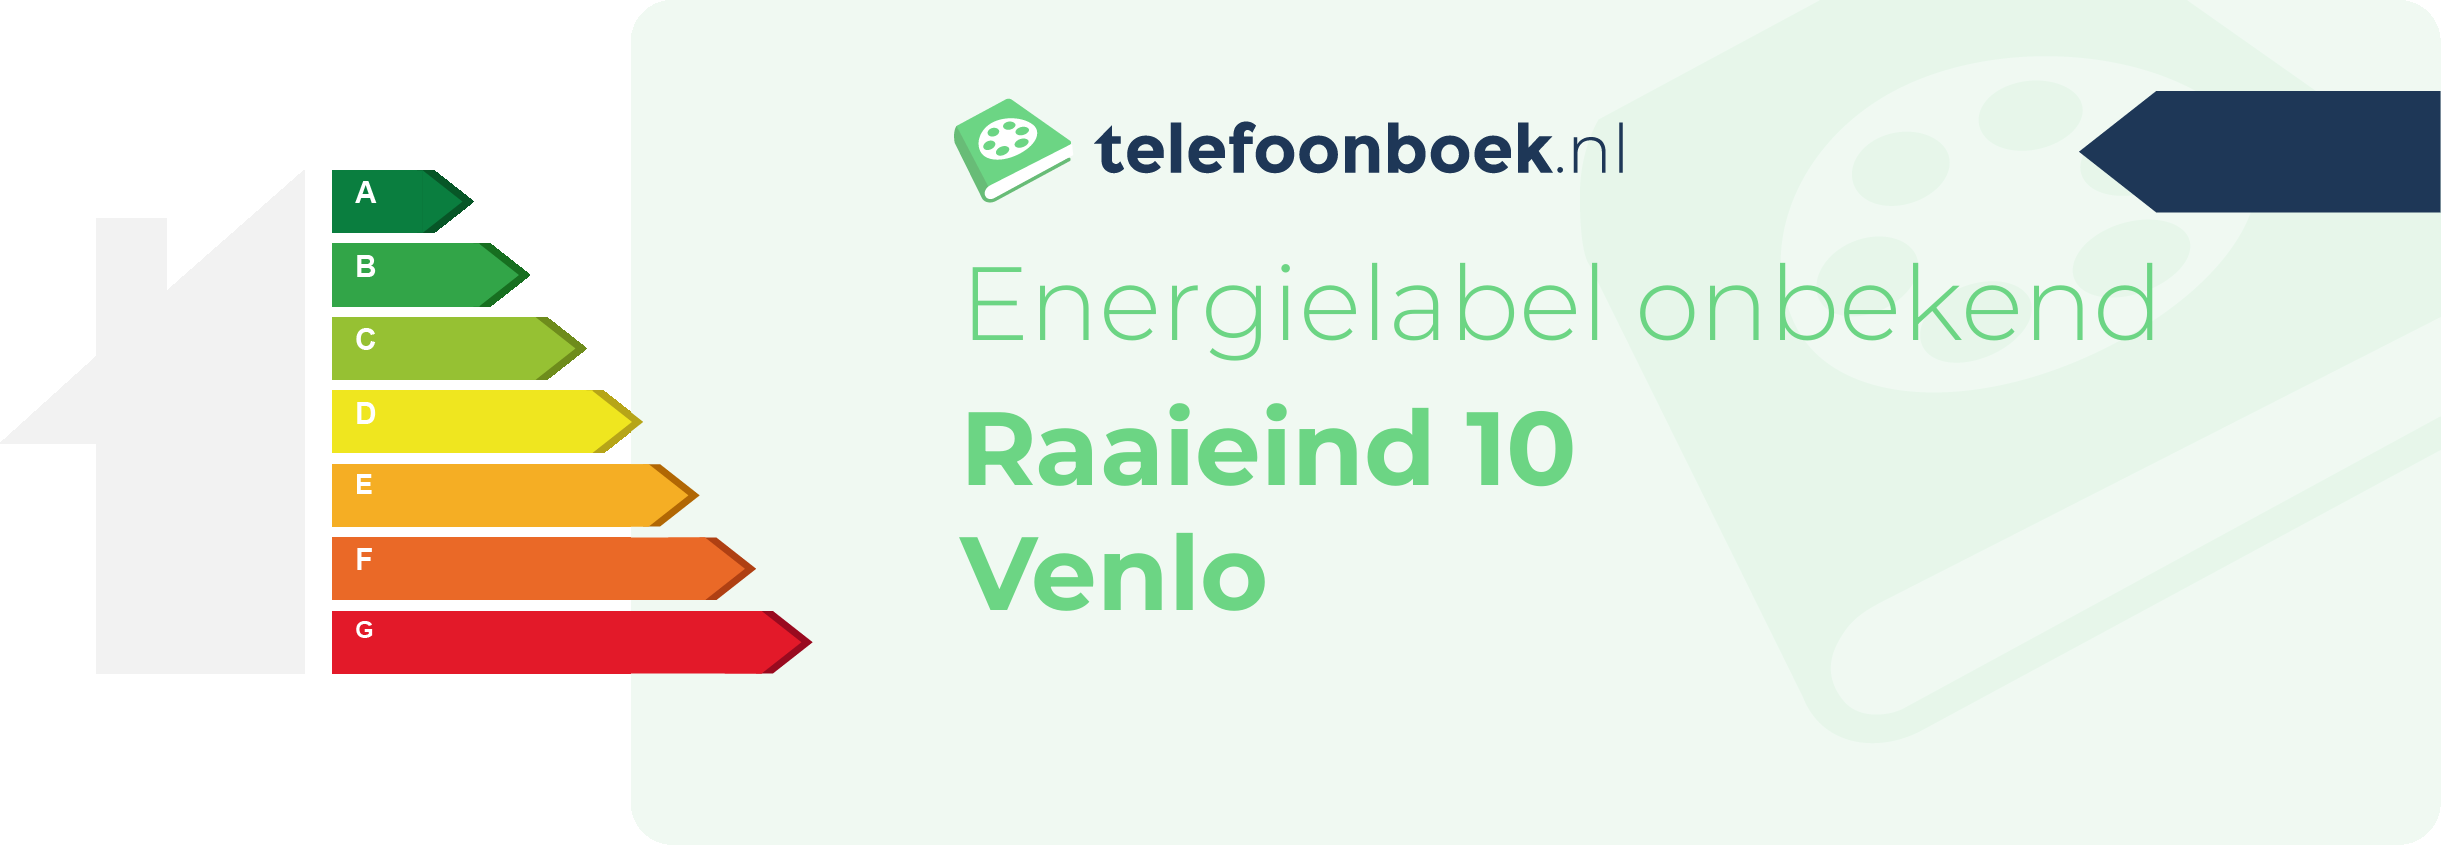 Energielabel Raaieind 10 Venlo